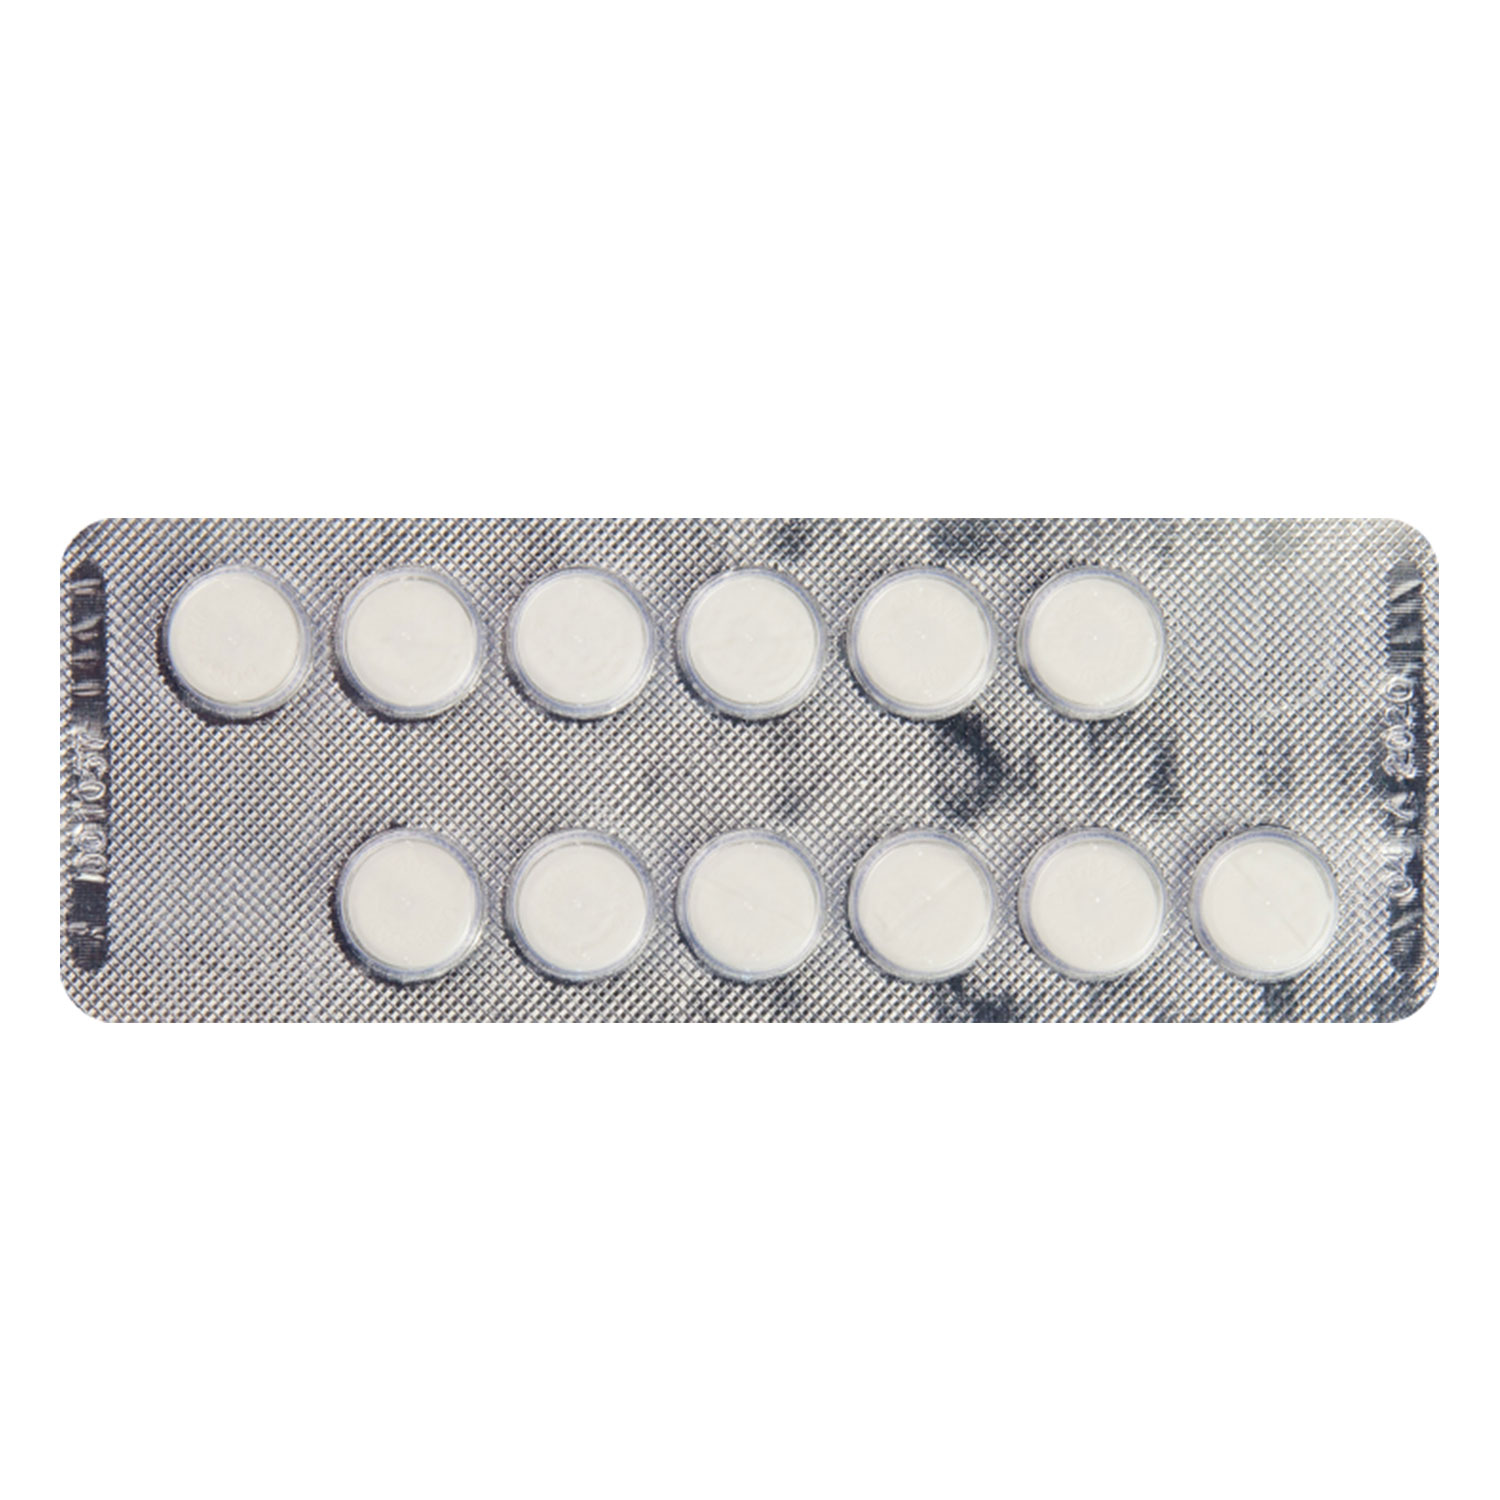 ドグマチール200mg スルピリド 通販 統合失調症 うつ病治療薬 薬通販のベストケンコー